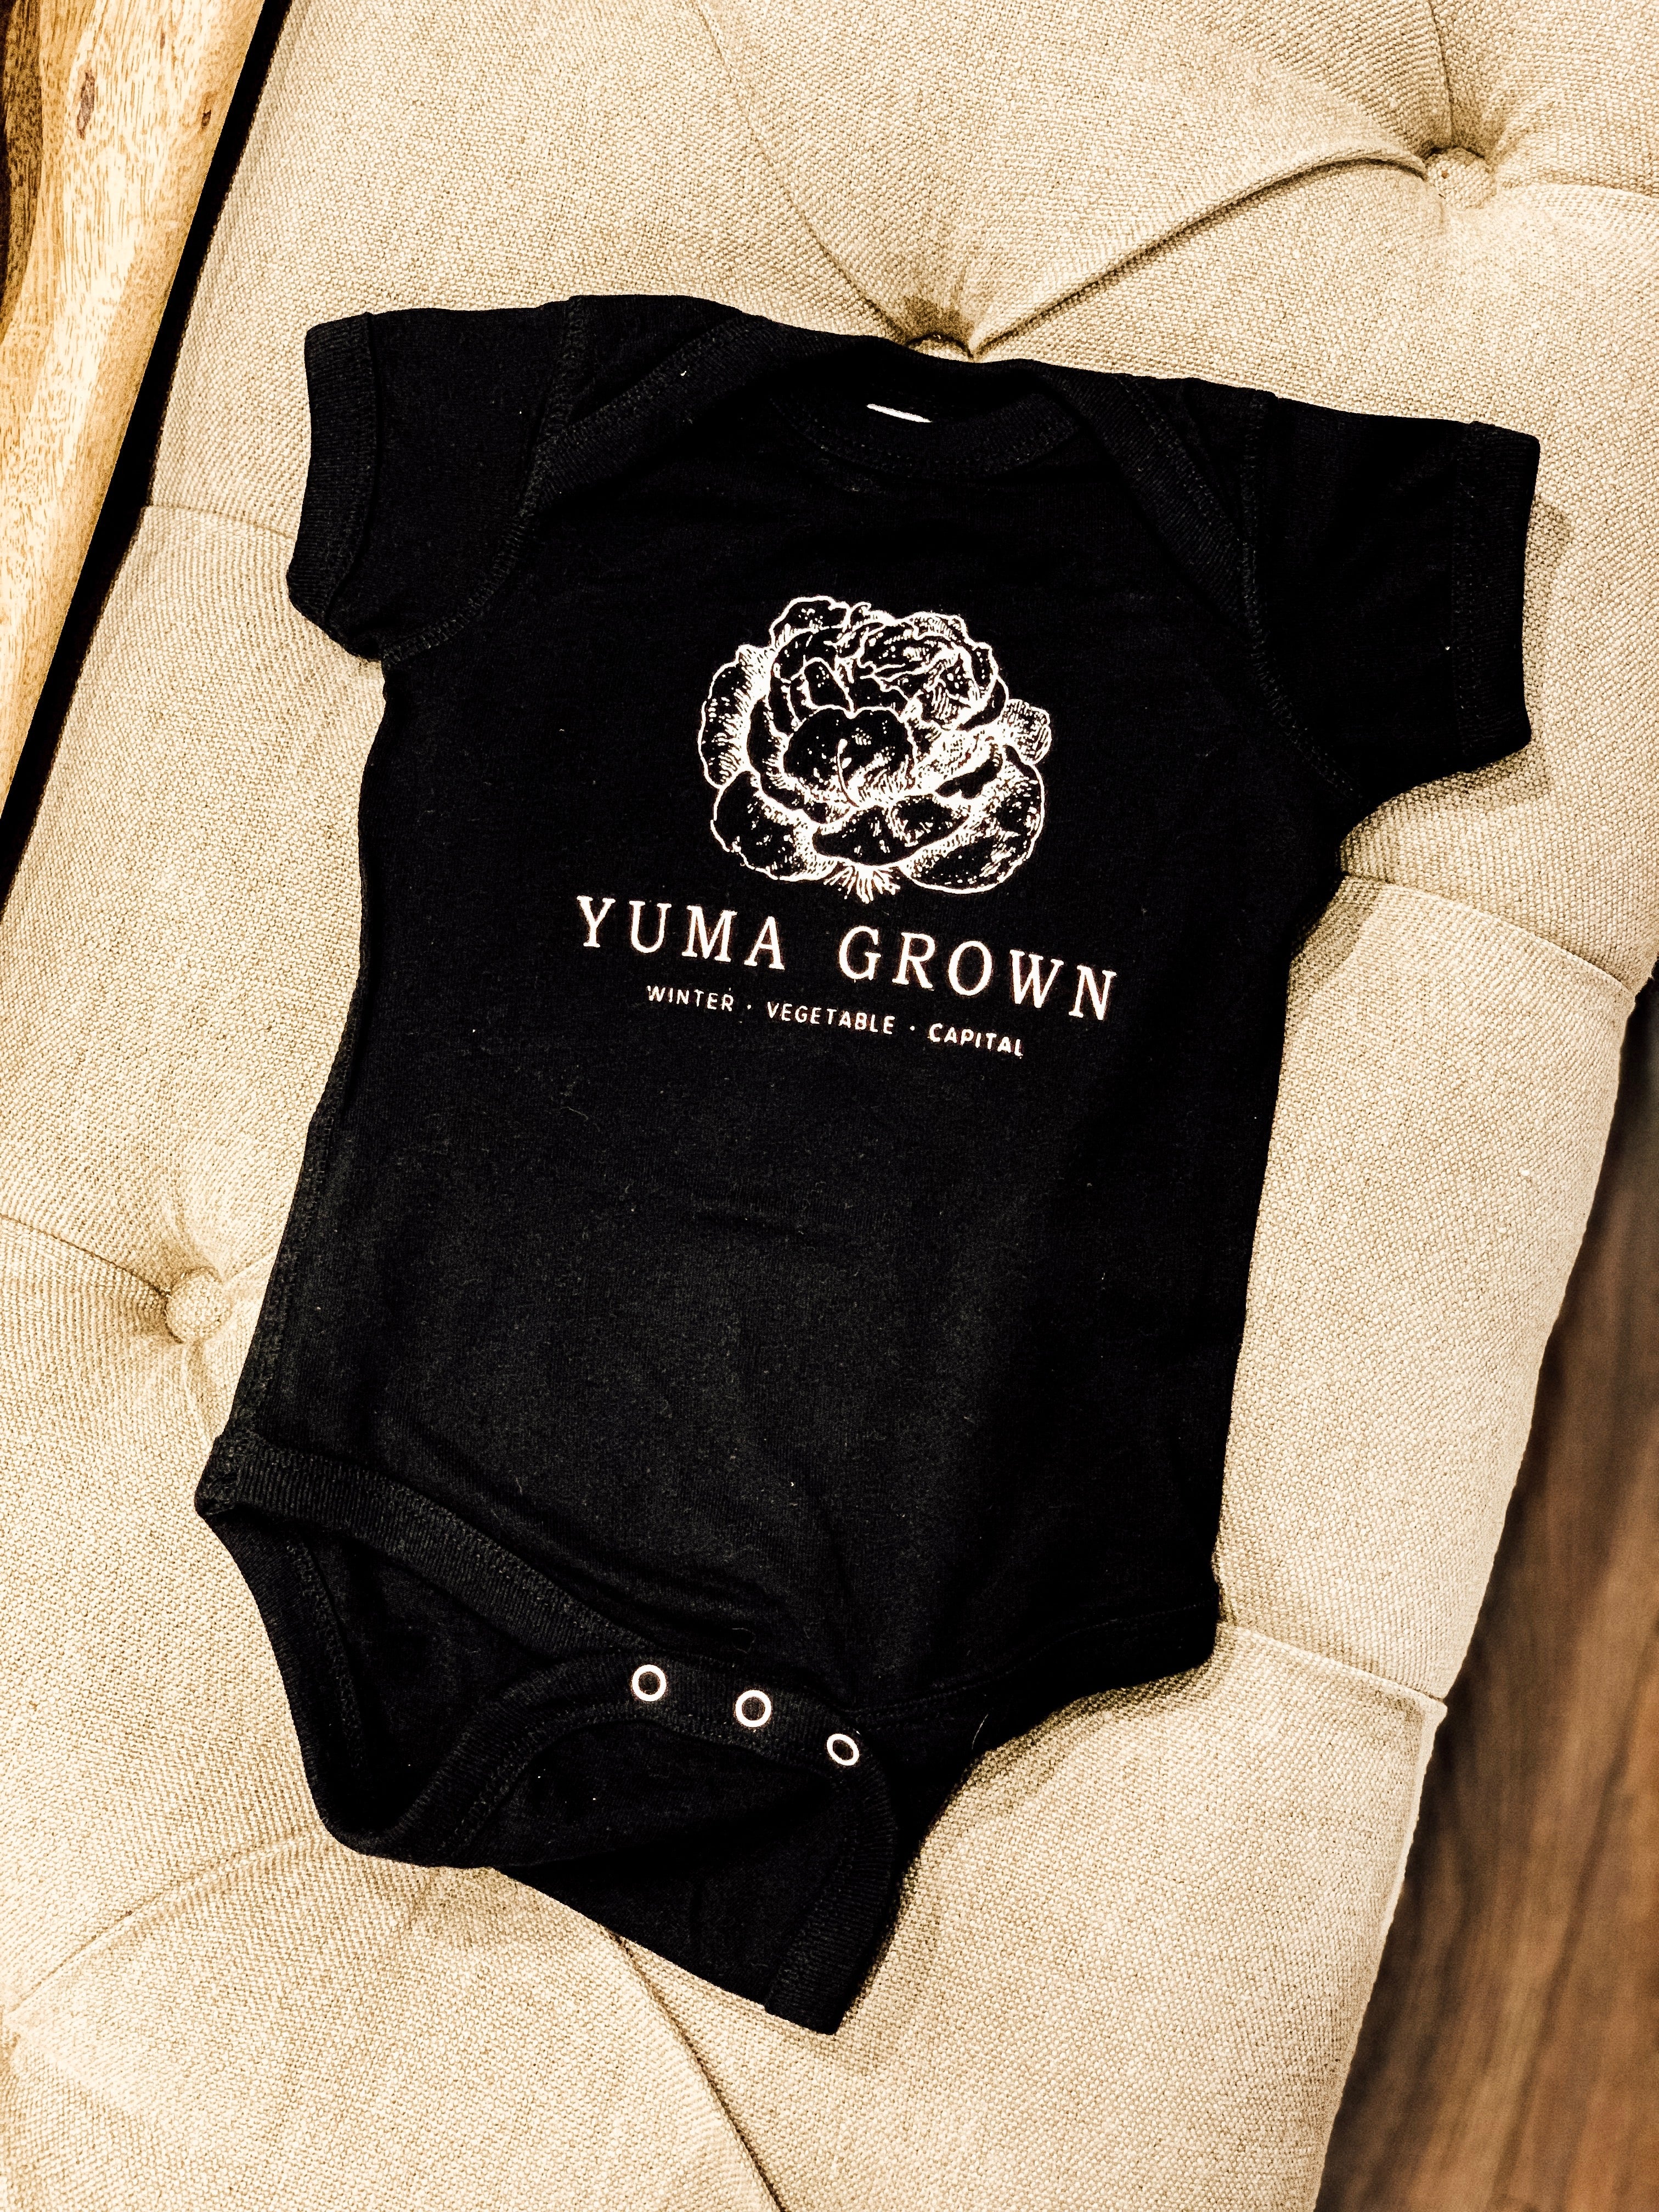 "Yuma Grown" Baby Onesie